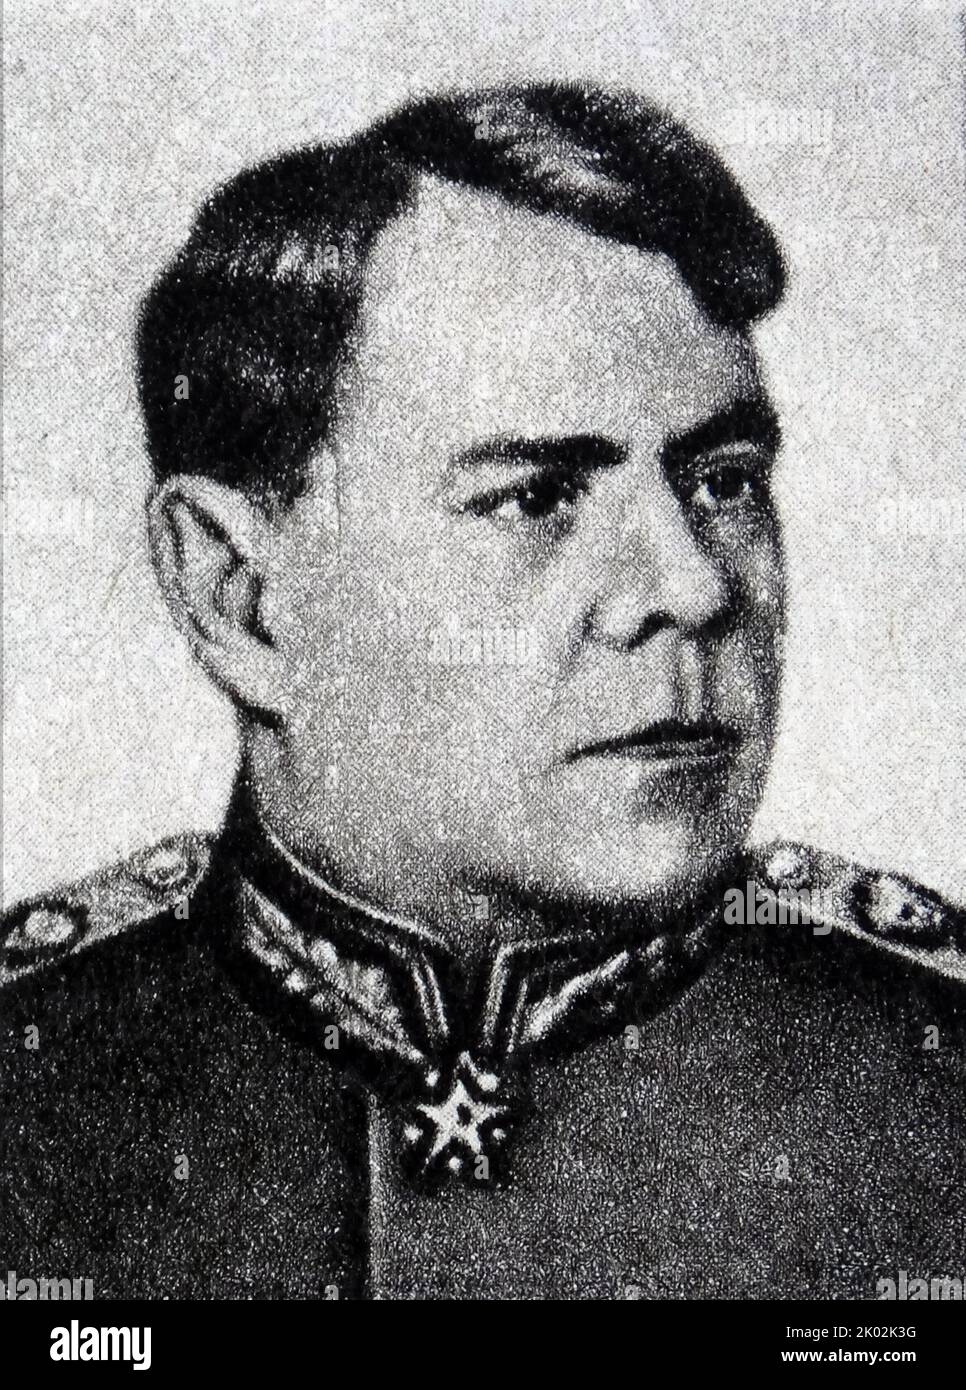 Aleksandr Mikhaïlovitch Vasilevskiy (1895 - 1977), maréchal de l'Union soviétique en 1943. Il a été chef de l'état-major général des forces armées soviétiques (1942-1945) et vice-ministre de la Défense pendant la Seconde Guerre mondiale, et ministre de la Défense de 1949 à 1953. Banque D'Images